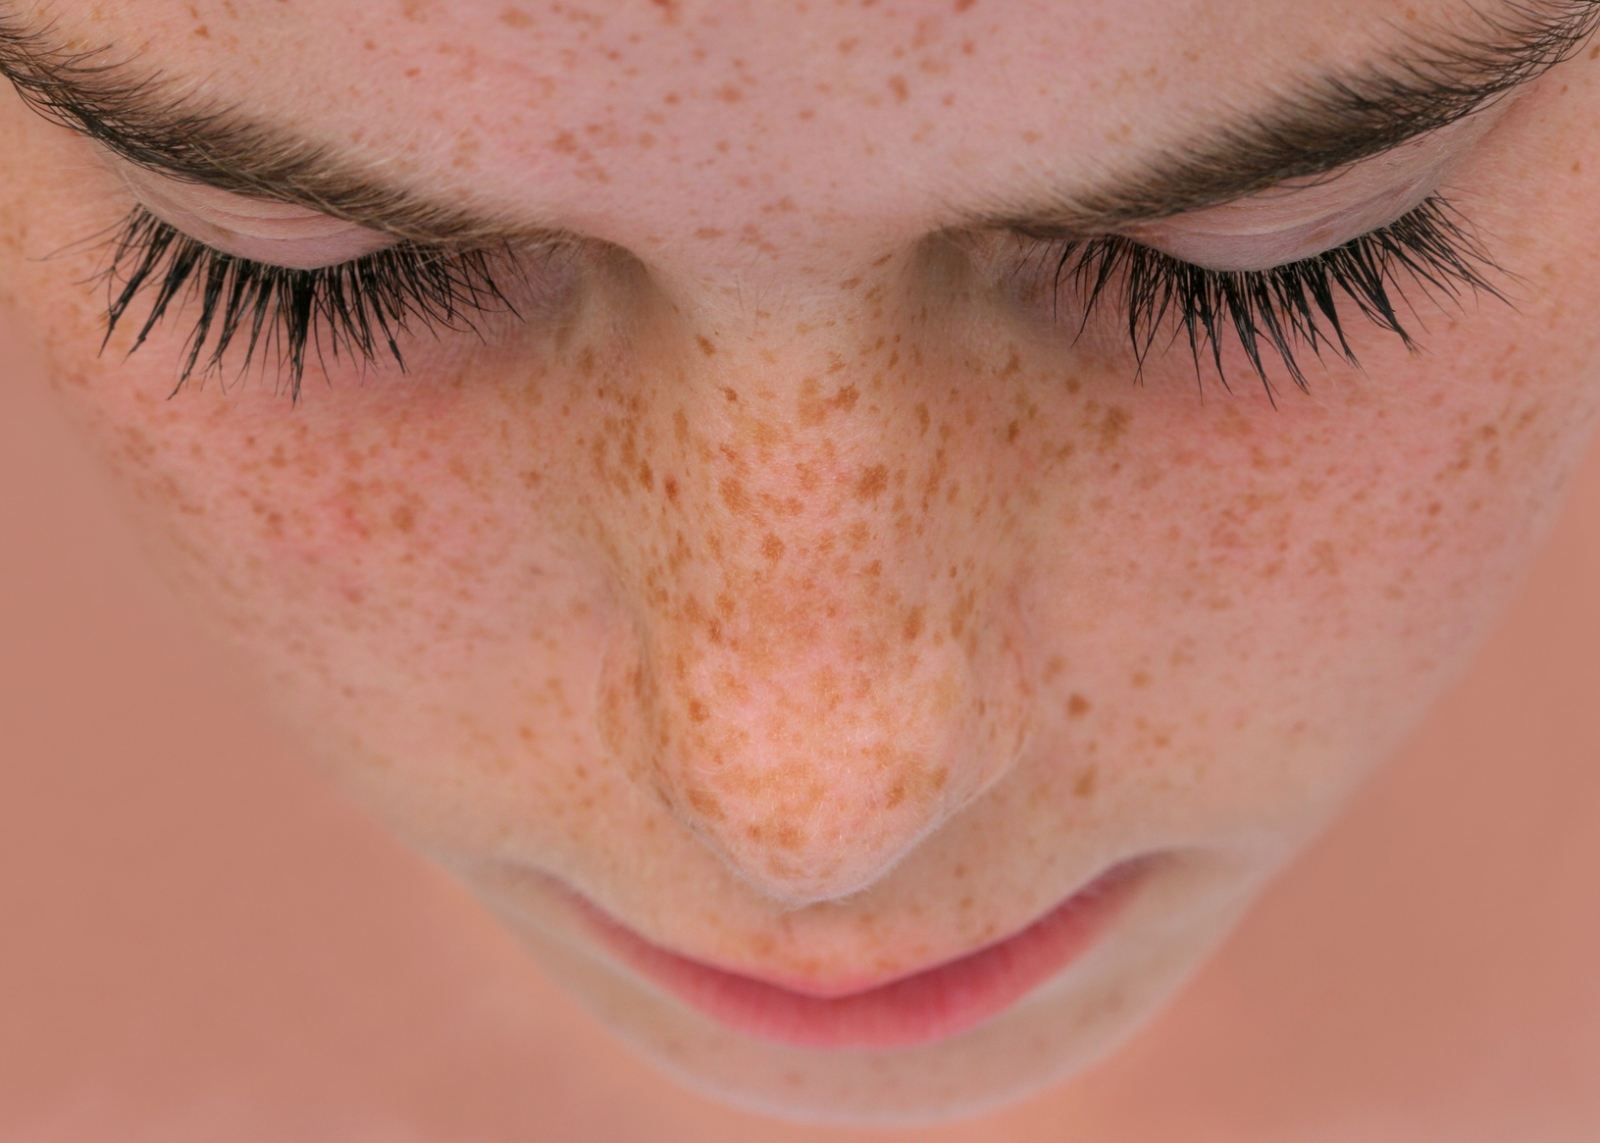 Sommersprossen sind eine der häufigsten Formen von Pigmentflecken im Gesicht